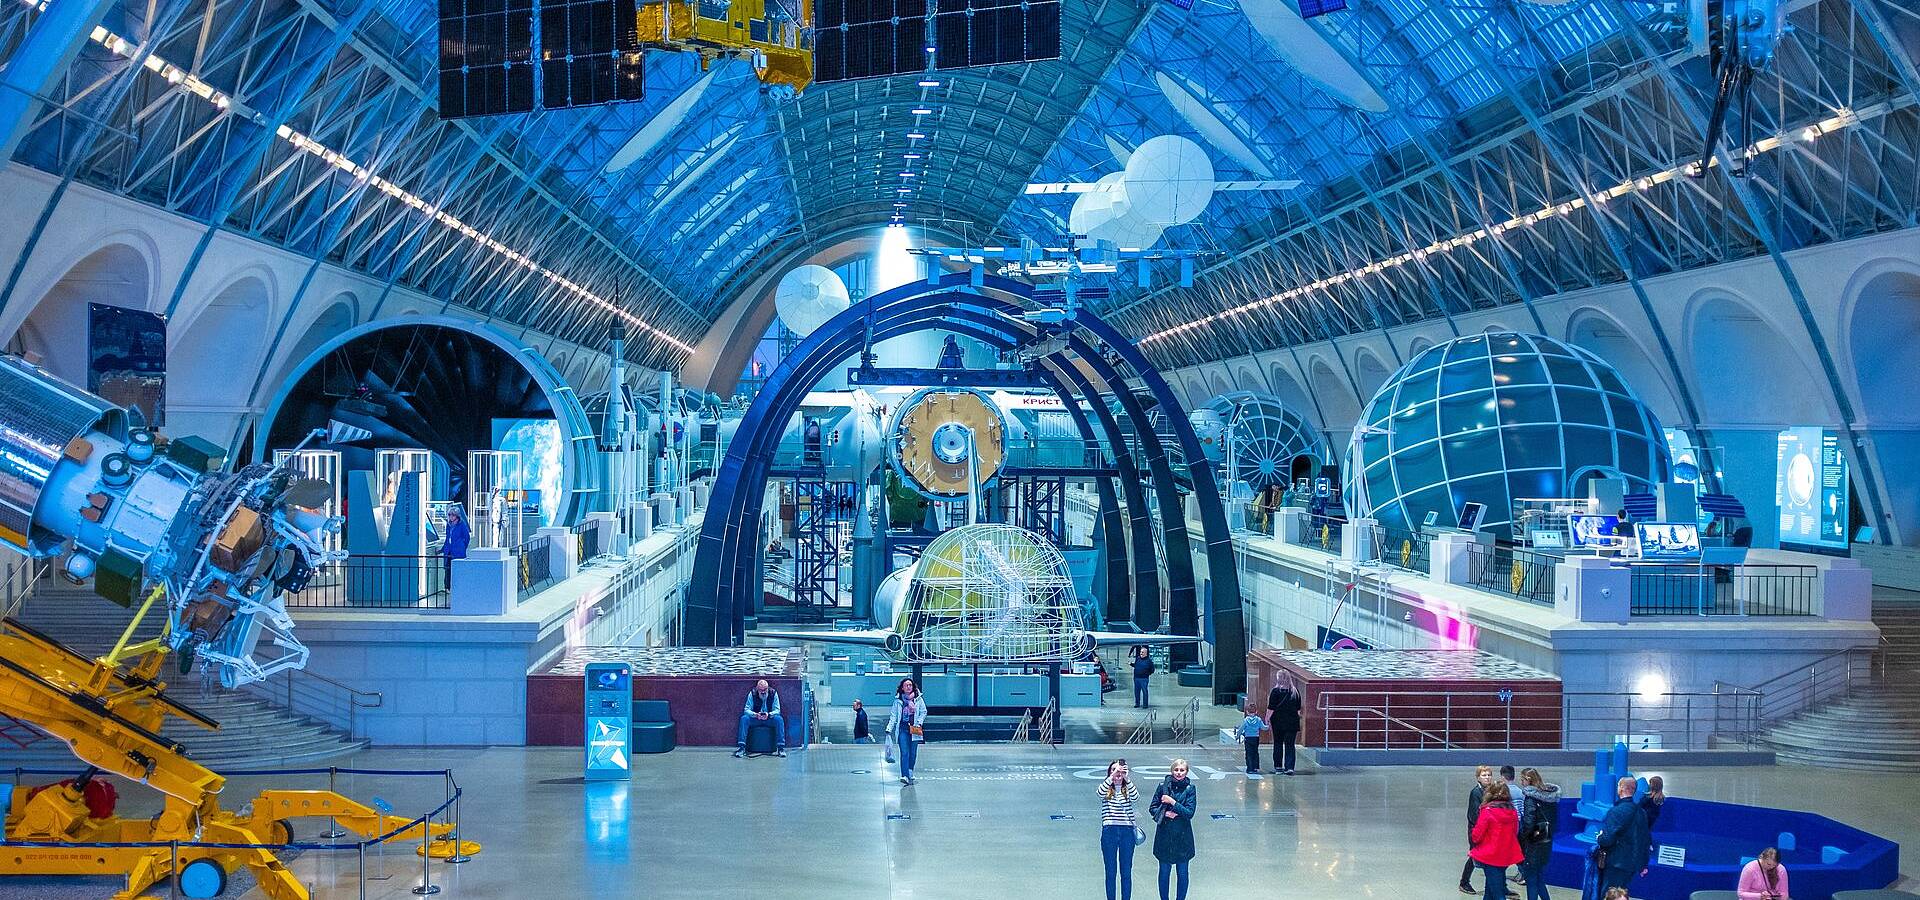 Blick in die riesige Halle eines Science Centers mit Besucher*innen darin